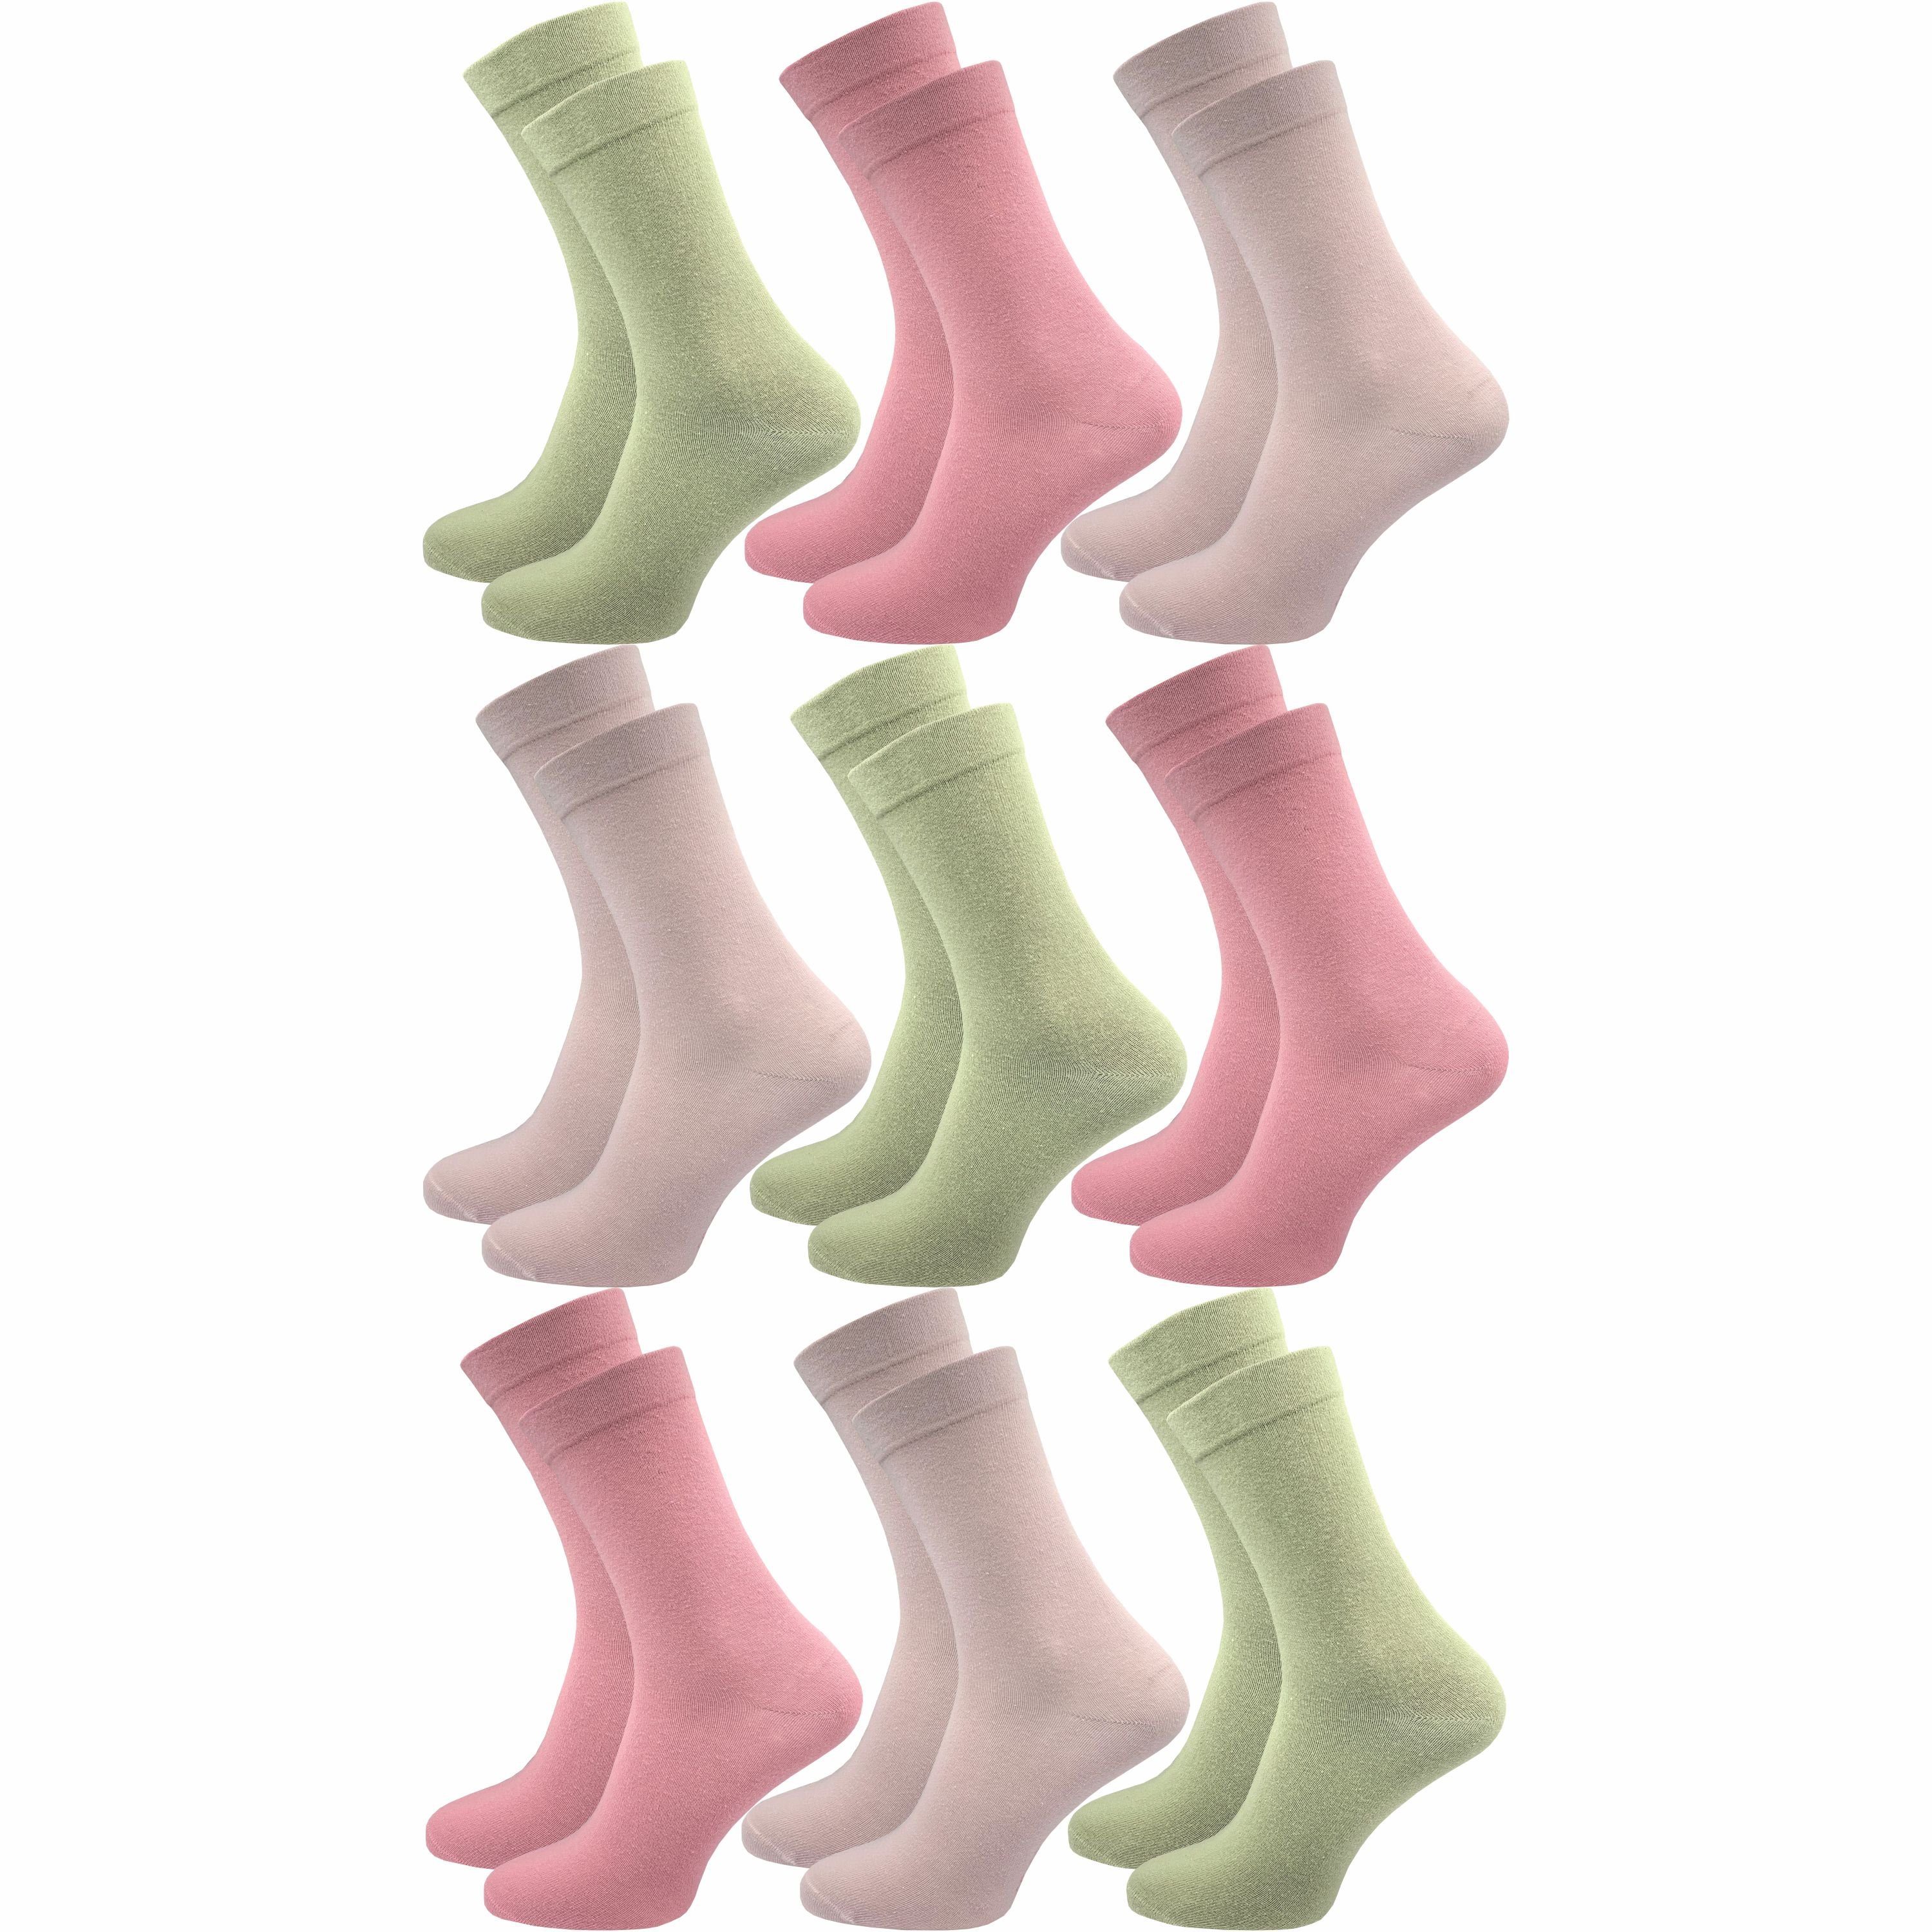 GAWILO Diabetikersocken für Damen - Ohne Gummibund - Ohne drückende Naht - Extra weit (9 Paar) Venensocke mit hohem Anteil Baumwolle sorgt für angenehmes Fußklima farbig 2